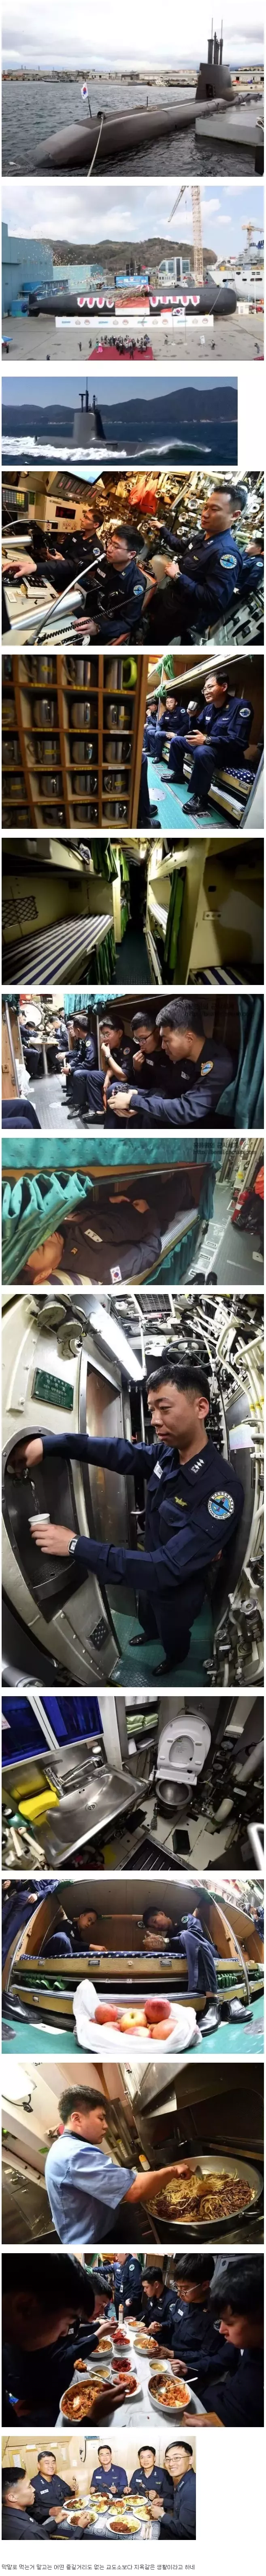 한국 해군 잠수함 내부 생활환경.jpg -cboard